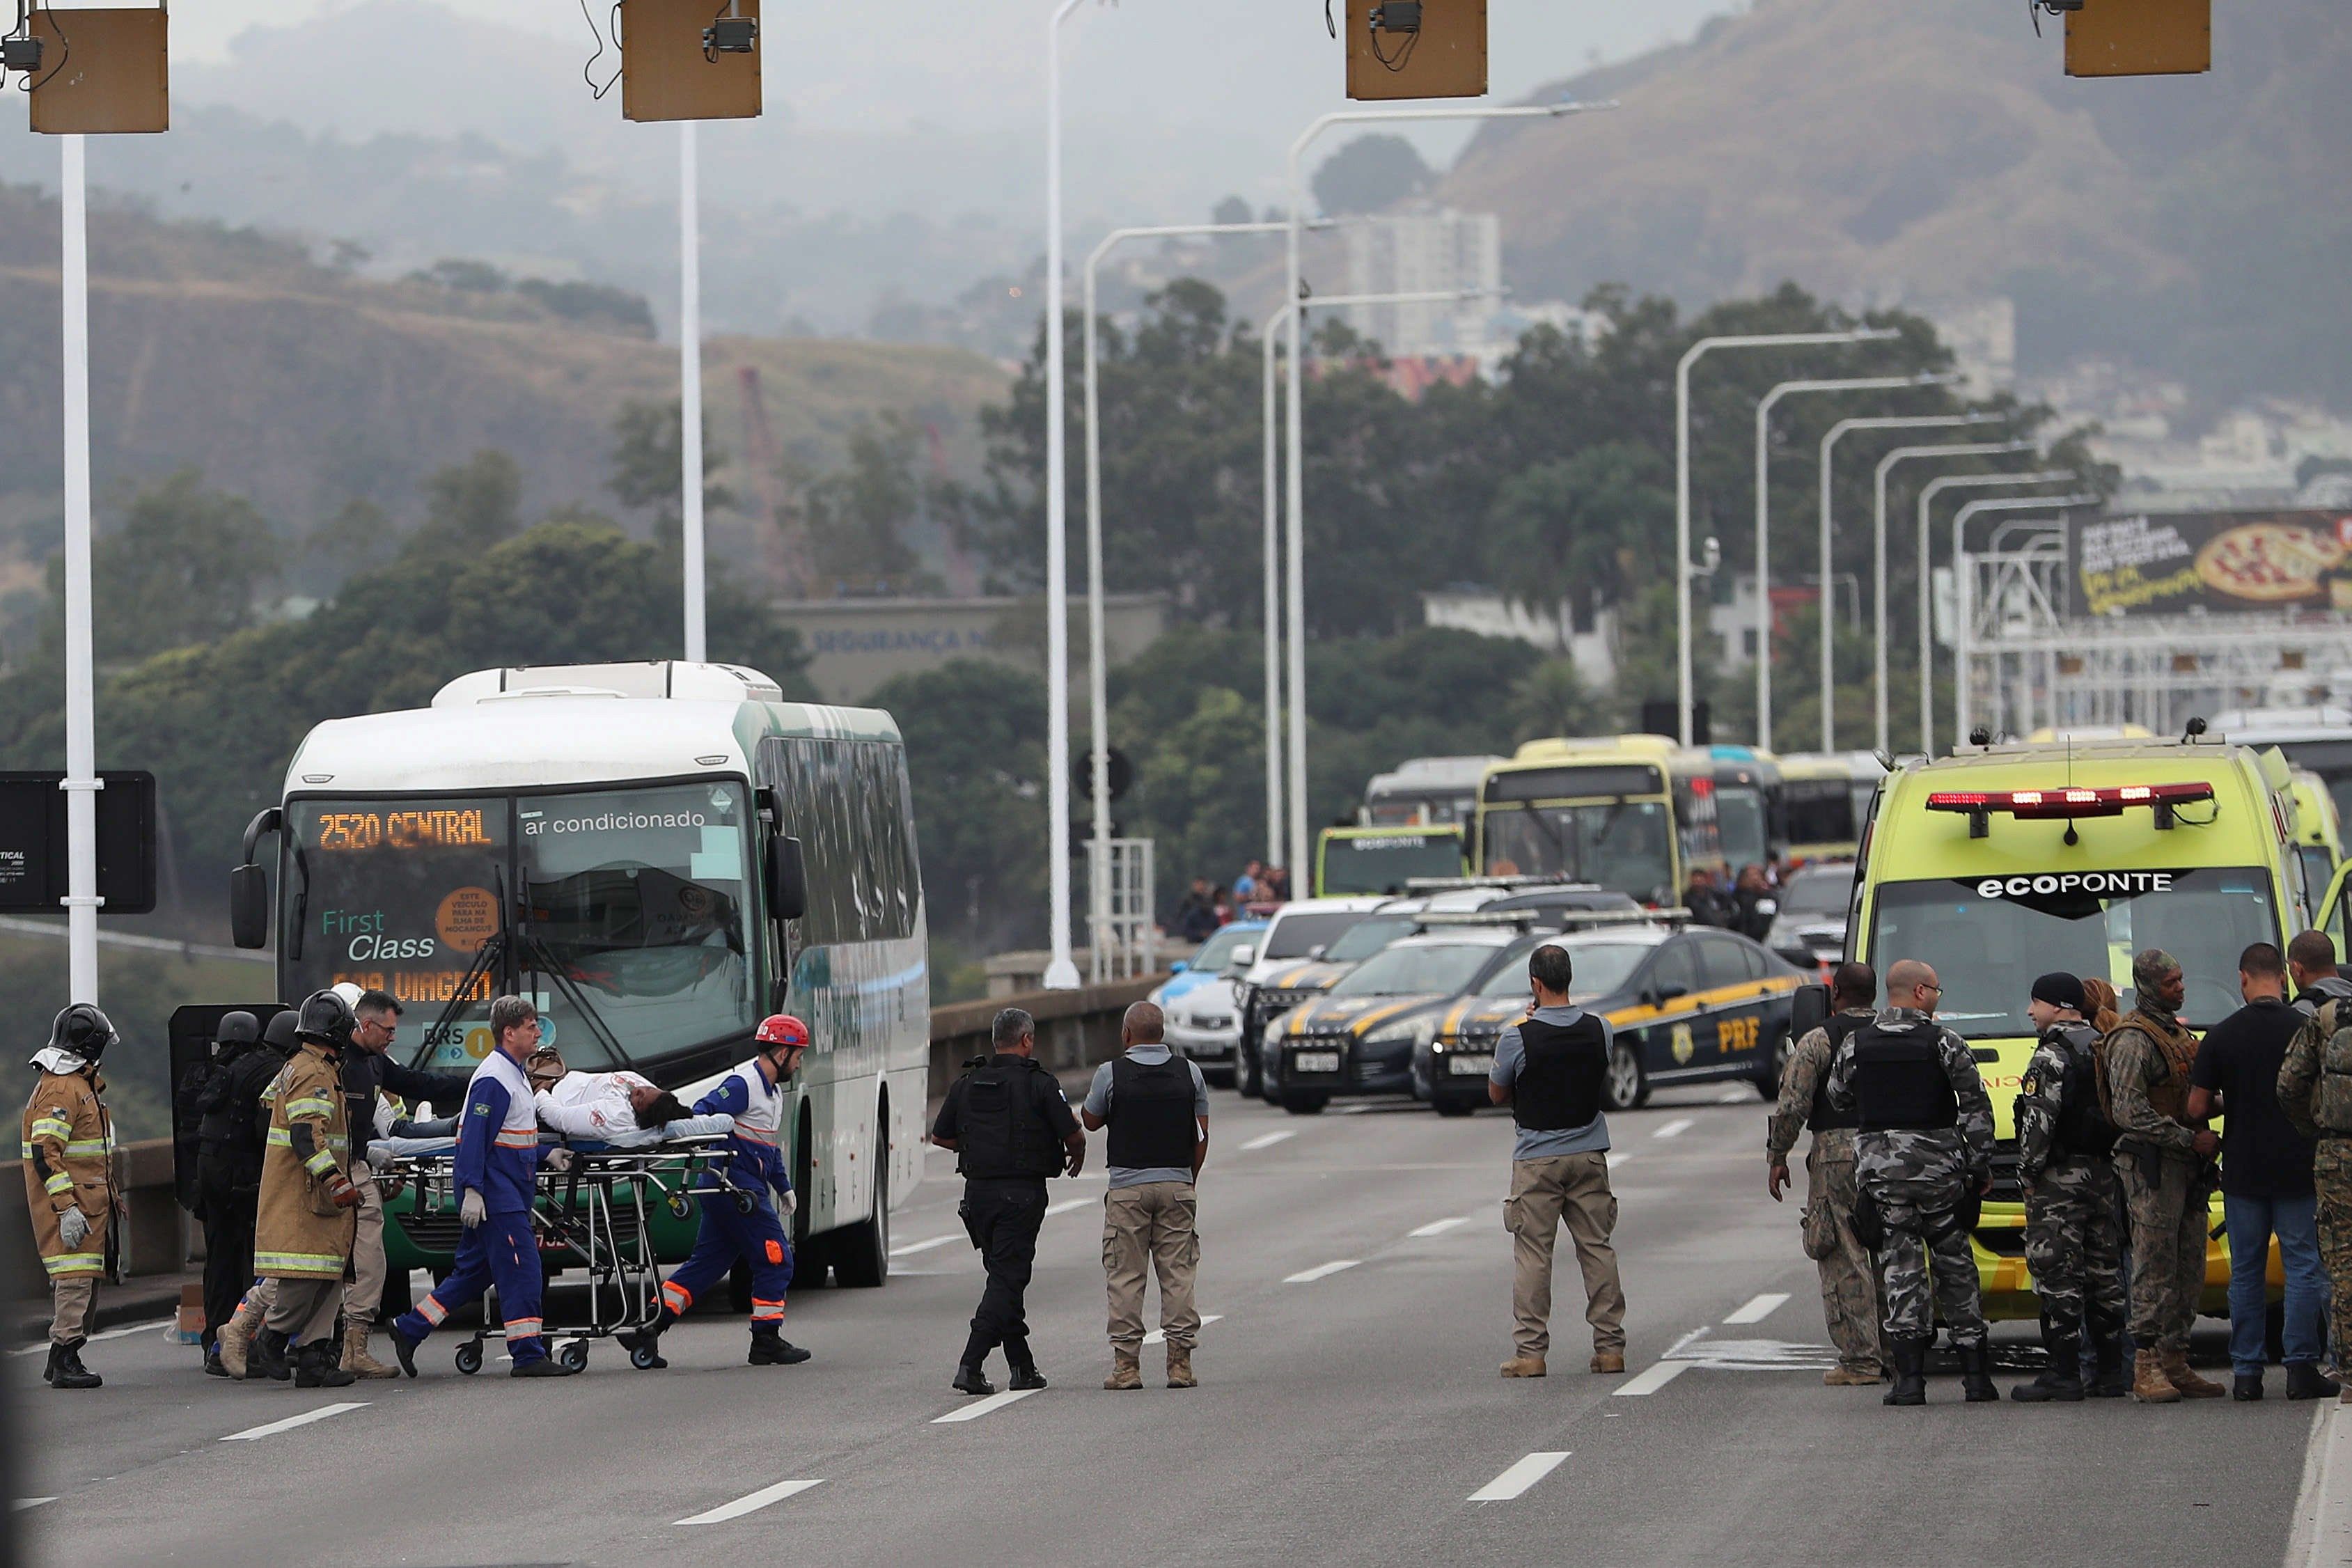 Una rehén es atendida por personal sanitario tras ser libertada por el secuestrador que la retenía en un autobús en el puente Rio-Niterói, Brasil. (Foto Prensa Libre: EFE)